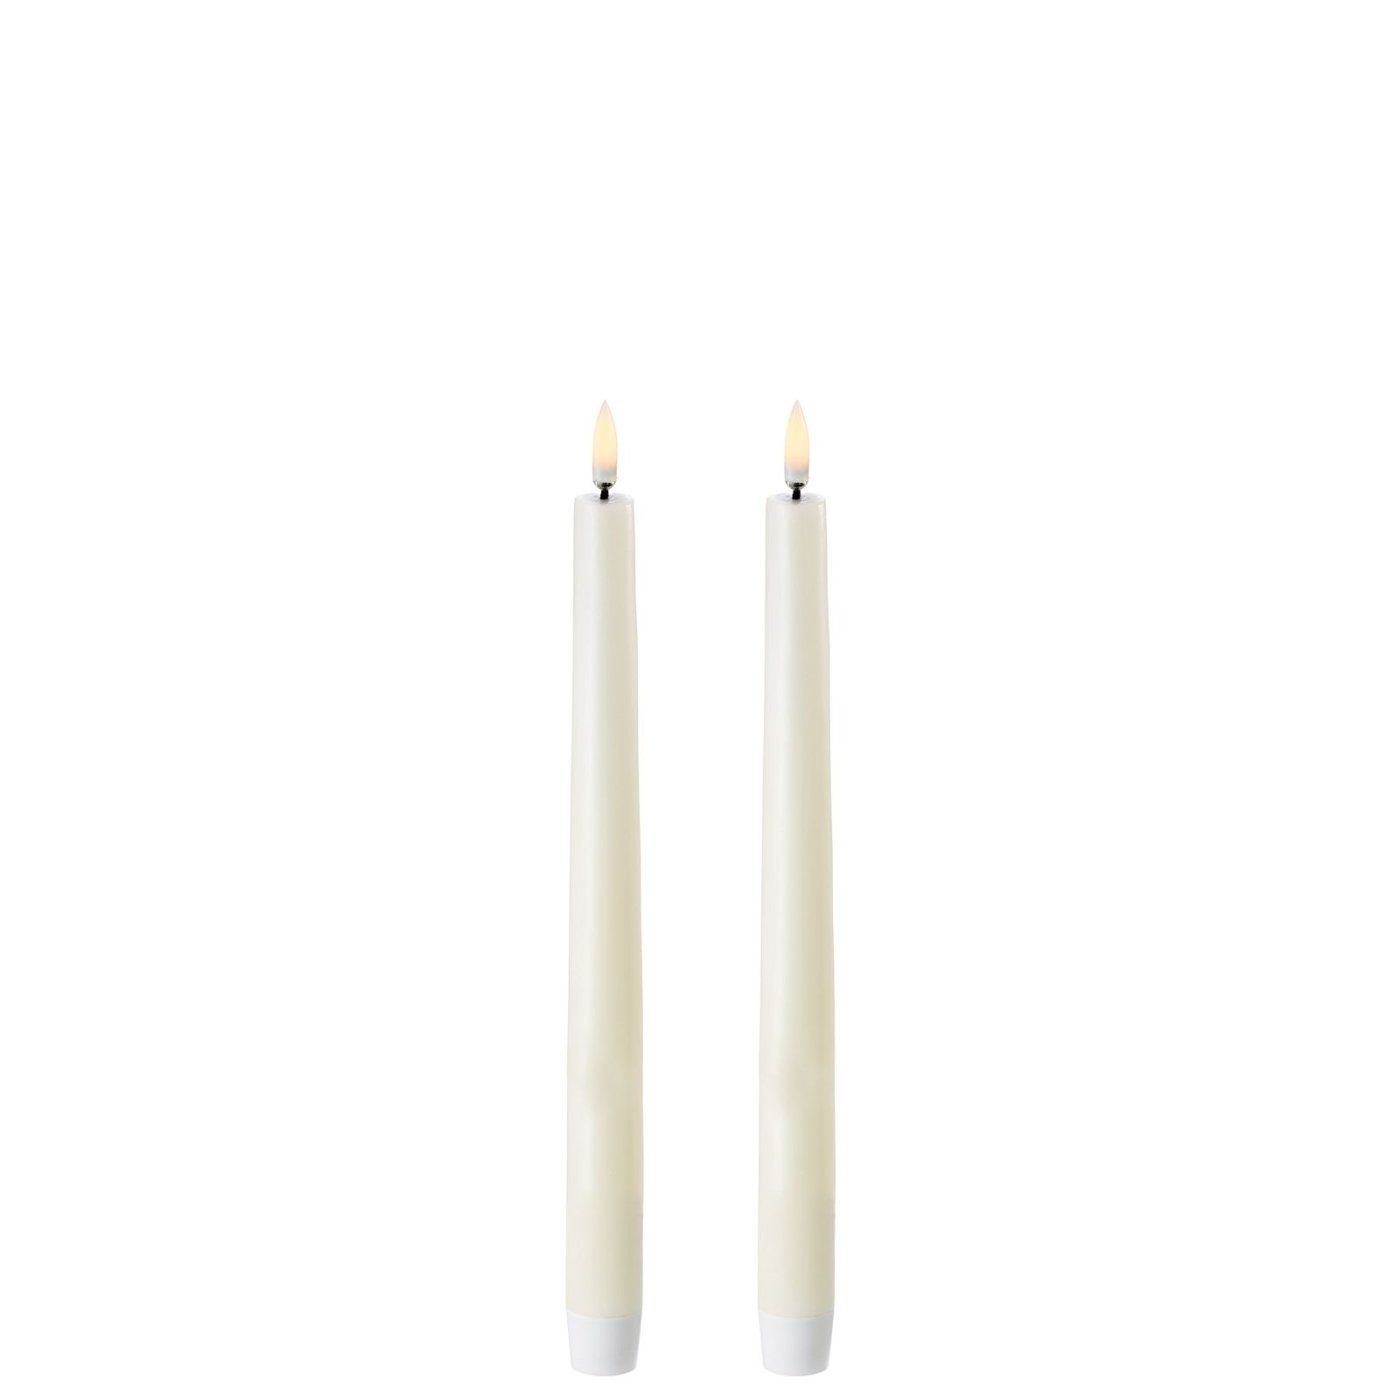 UYUNI Lighting LED-Kerze 2 Stabkerzen - LED Kerze - 2.3 x 25.5 cm - ivory (elfenbein) - LED Kerze